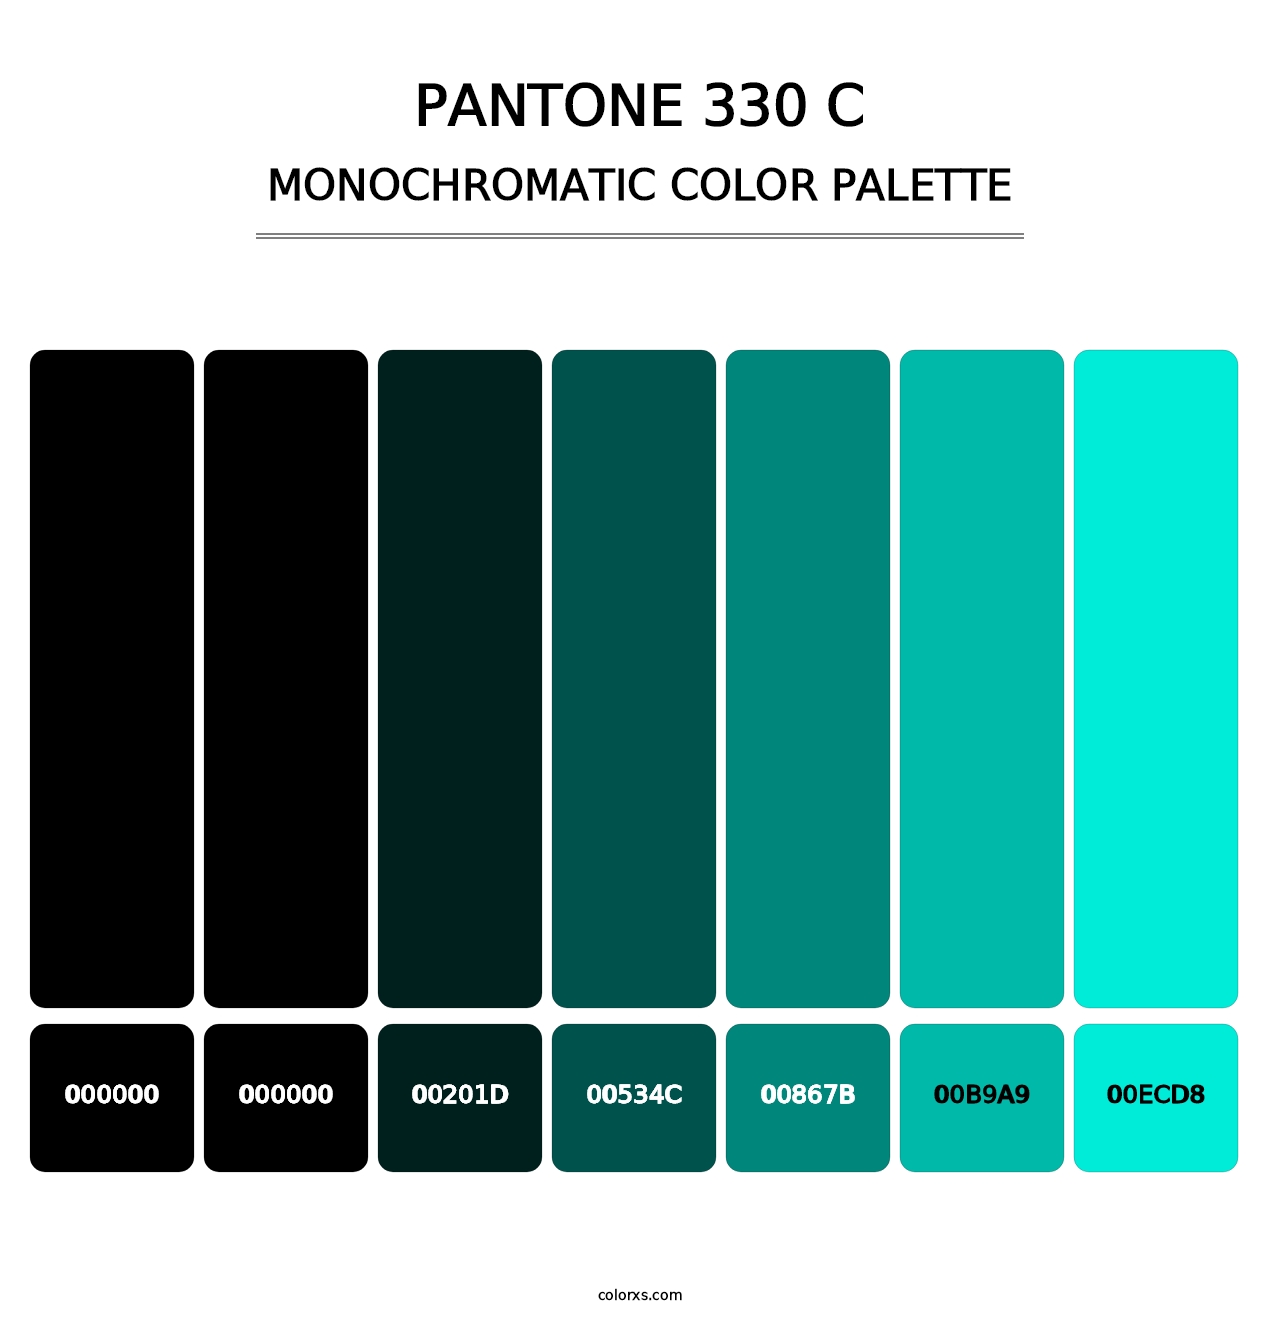 PANTONE 330 C - Monochromatic Color Palette